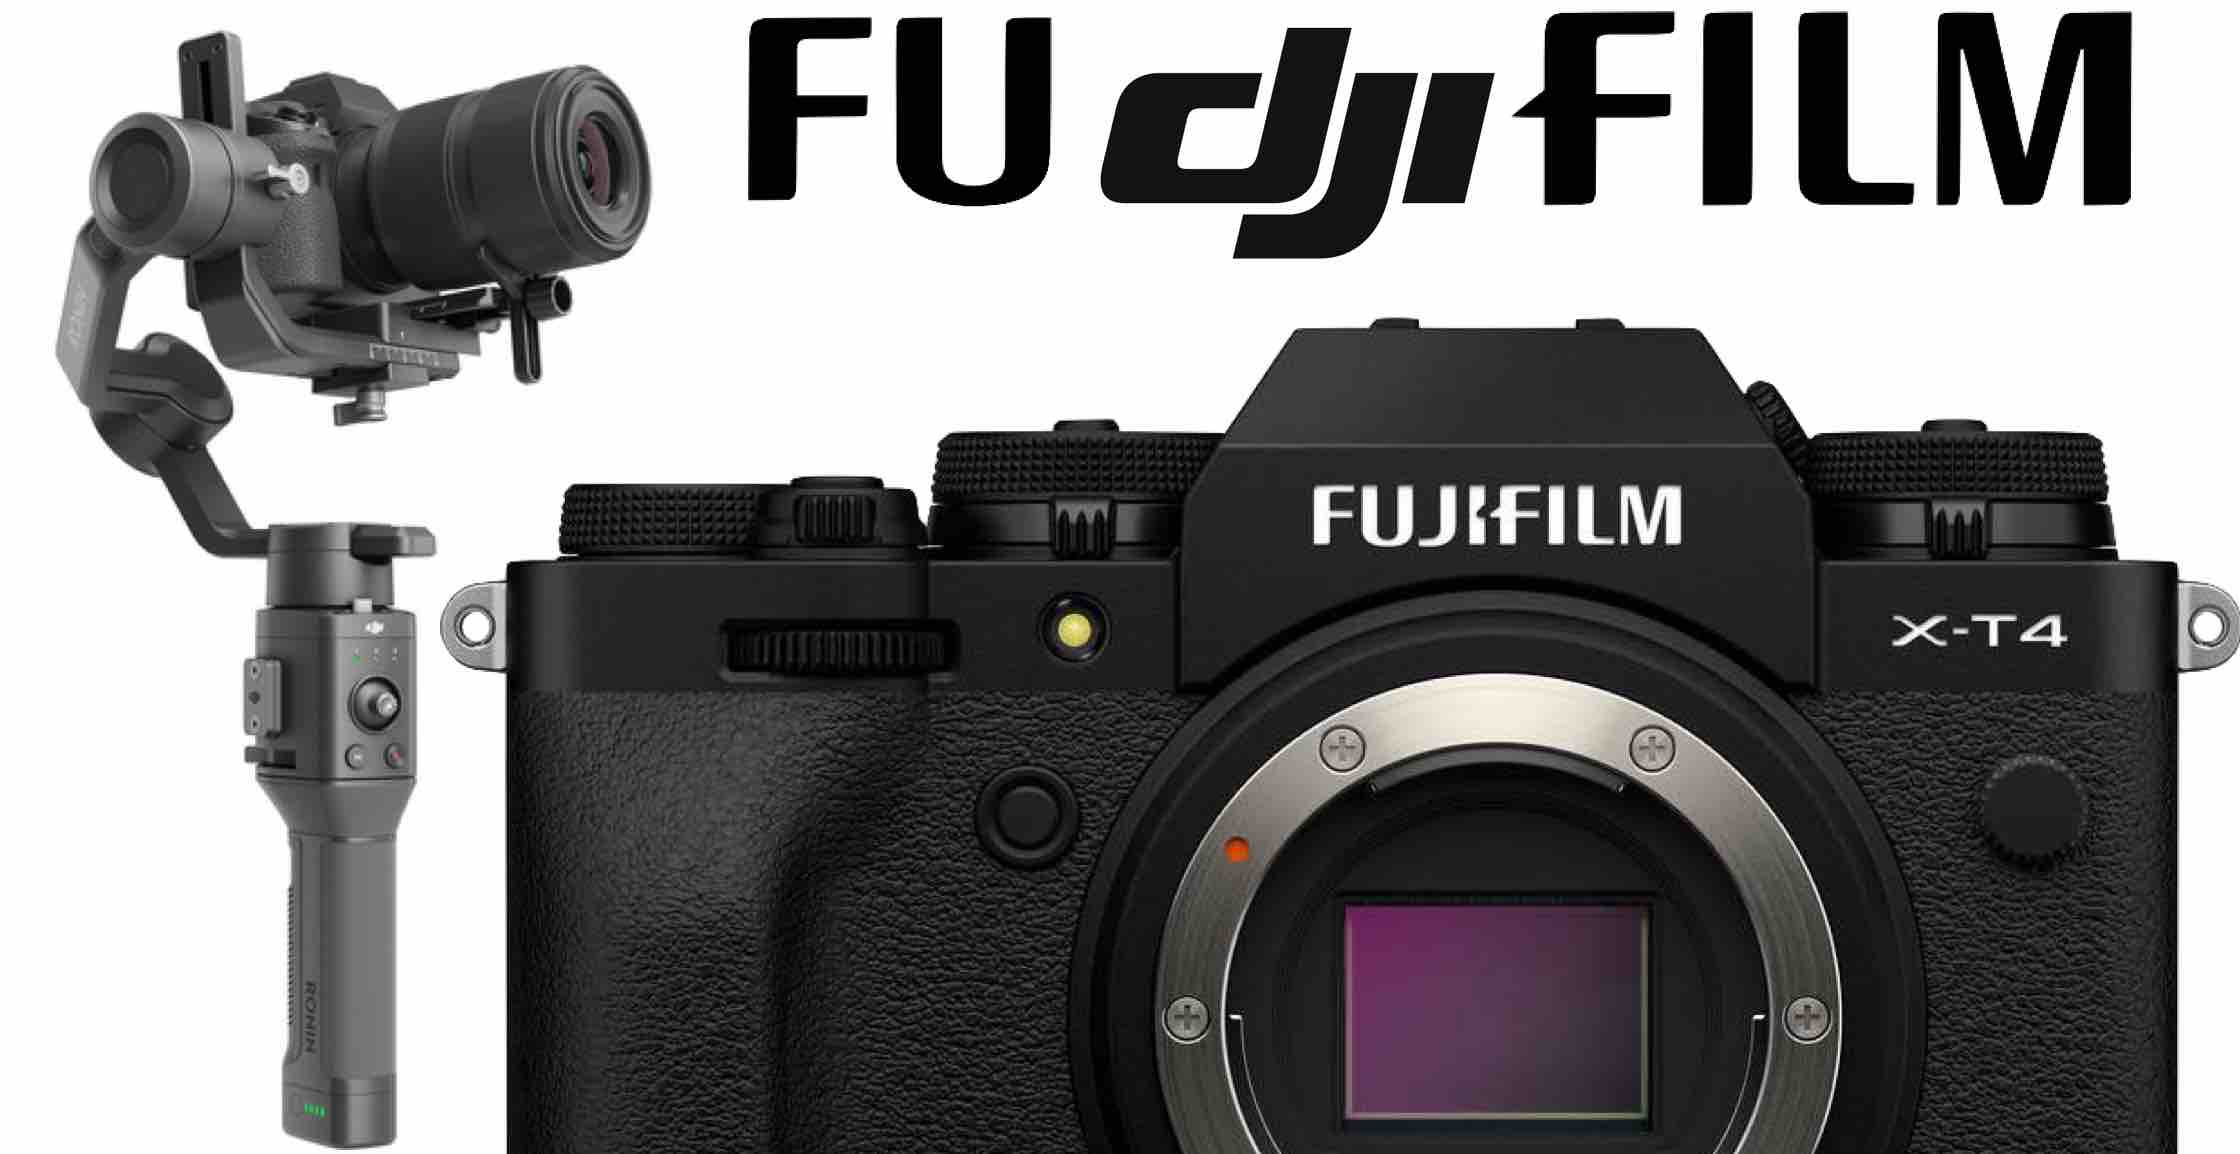 Kwalificatie Detective Tegenhanger New DJI Ronin SC/S Firmware adds Fujifilm X-T4 Support - Fuji Rumors